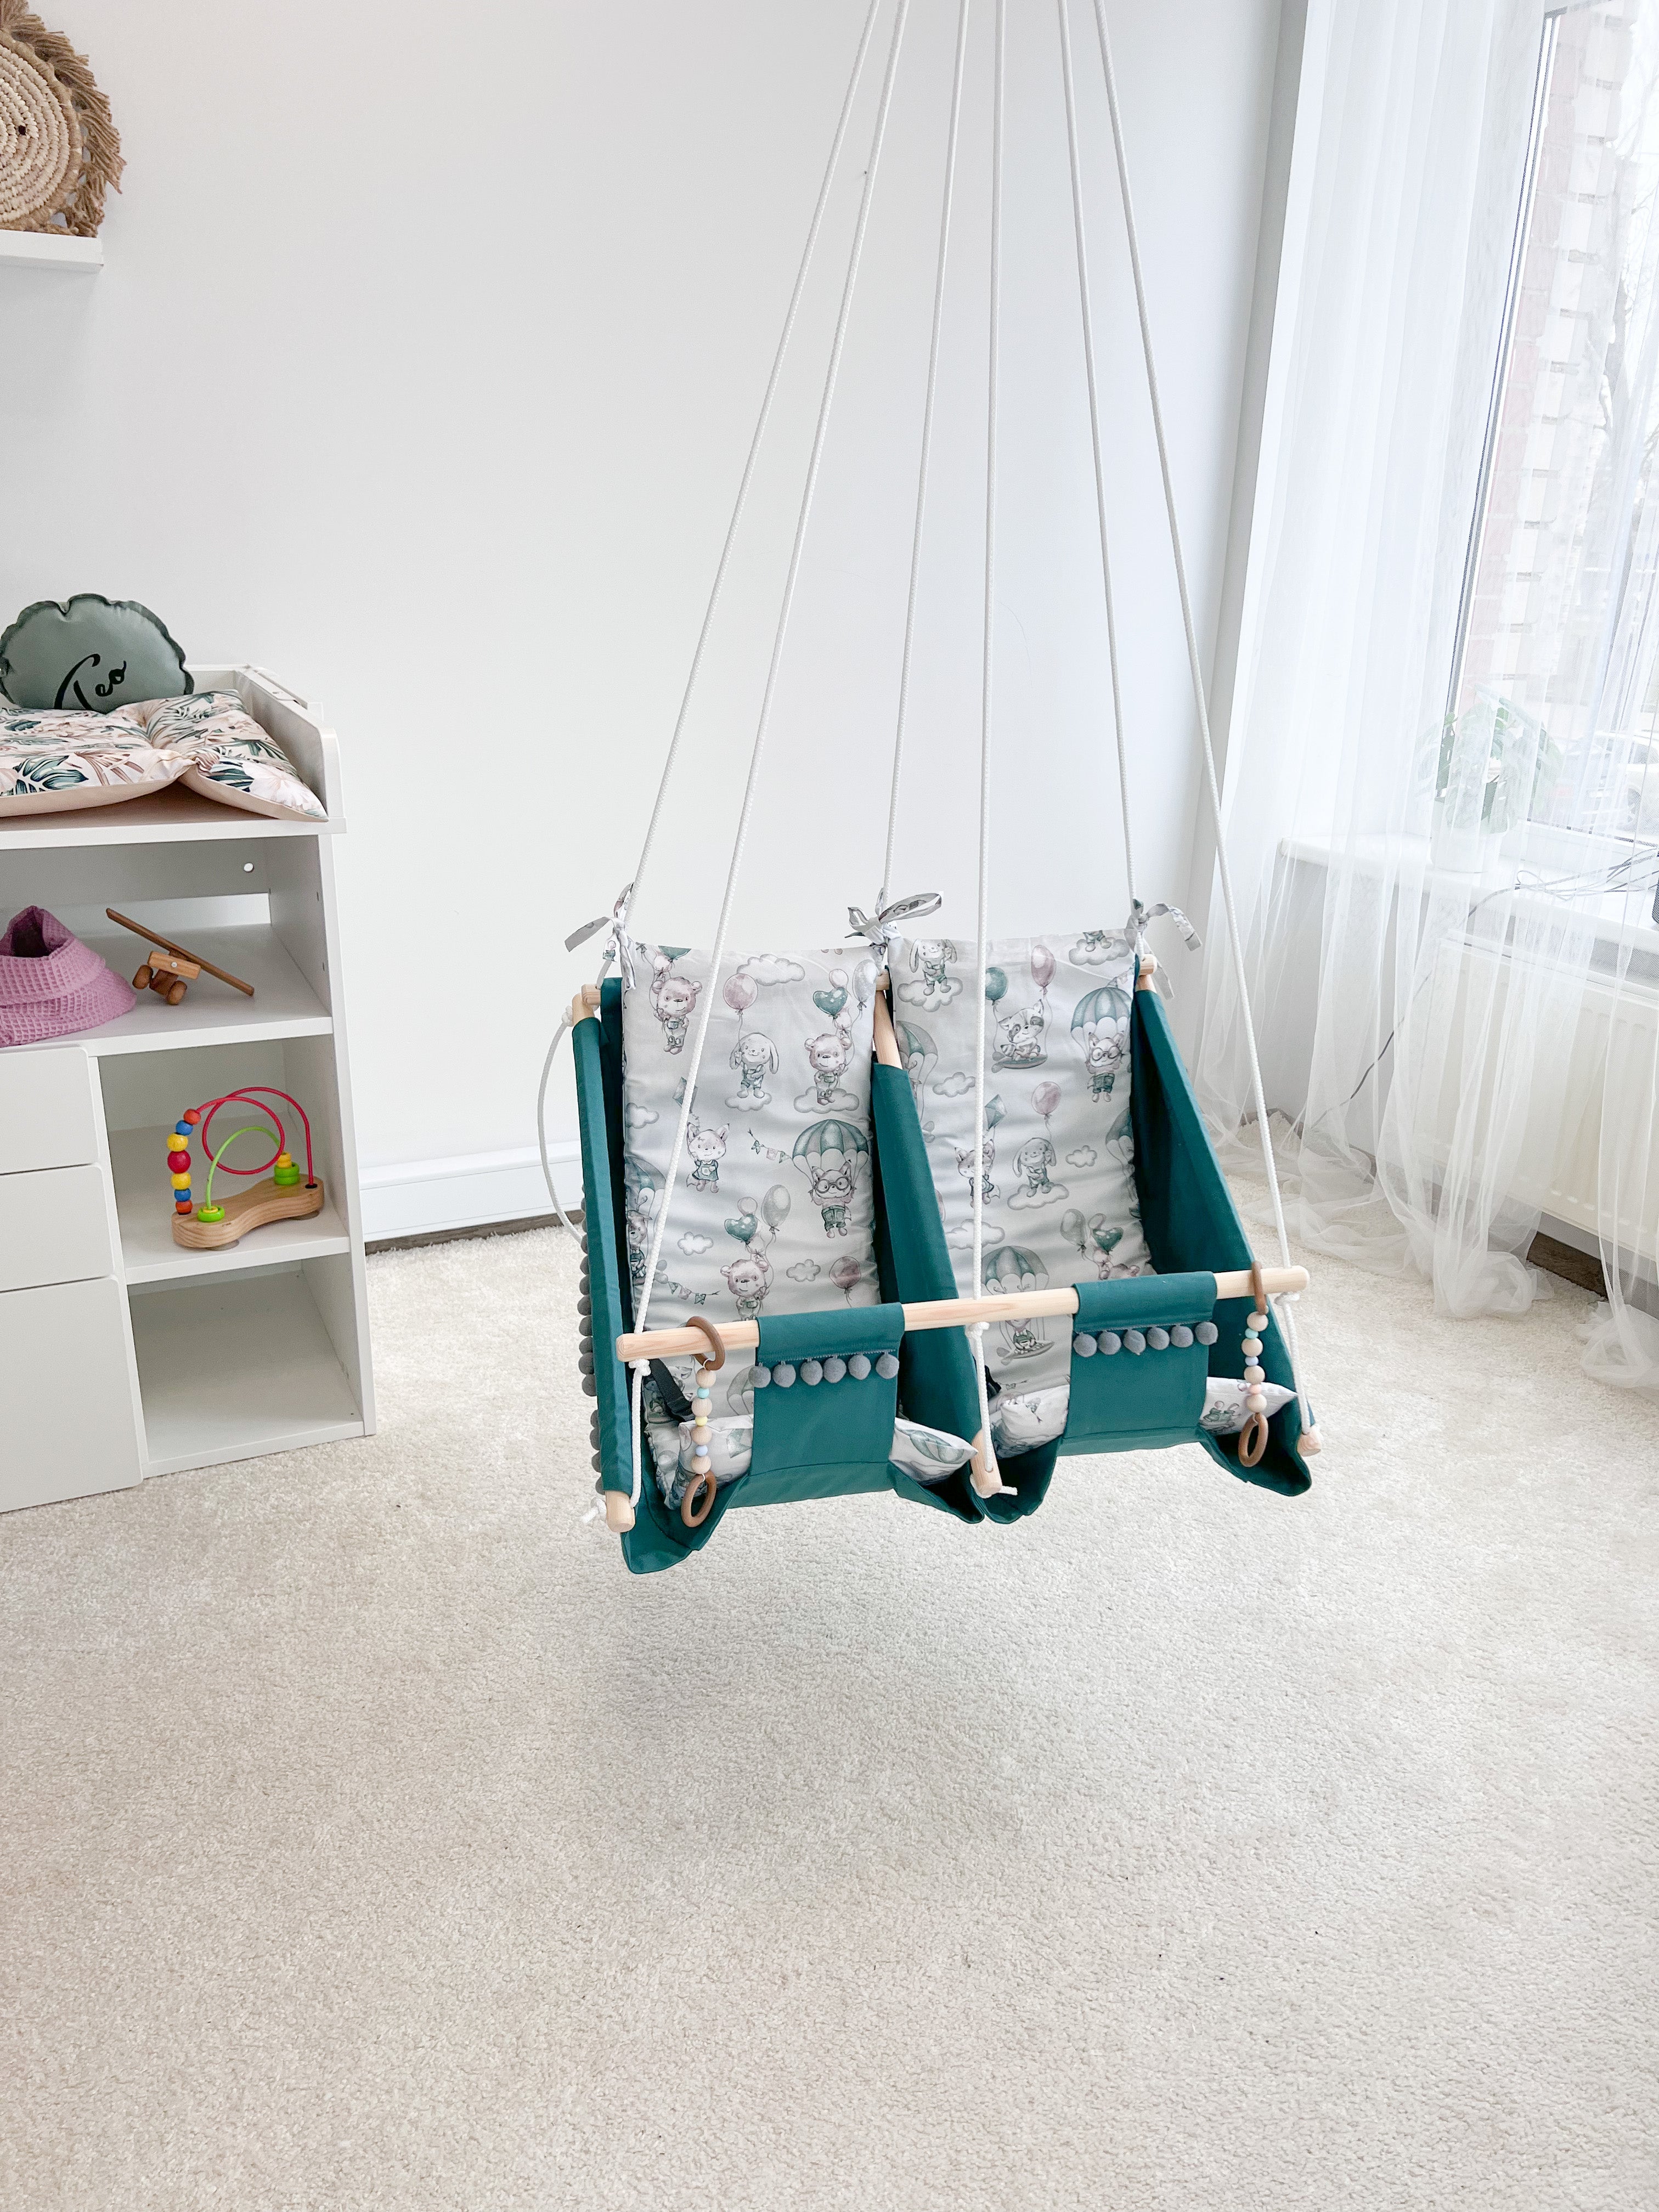 Twin hammock swing "Childhood"